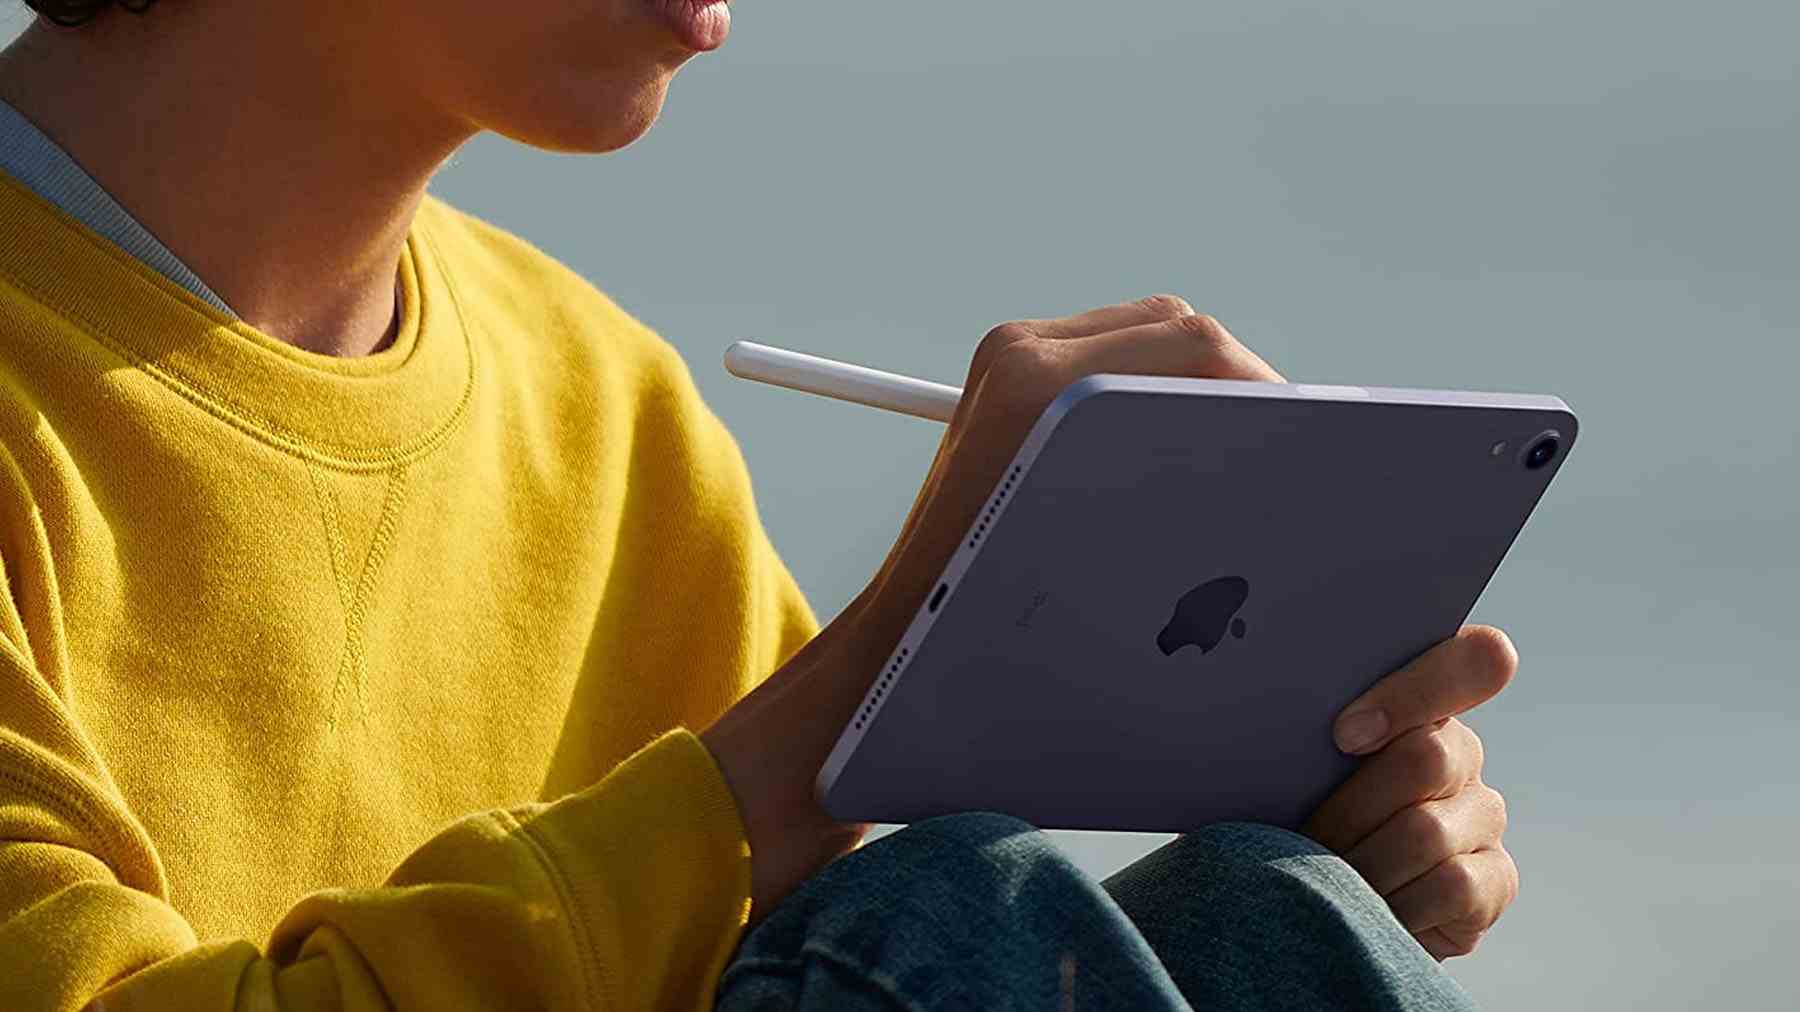 Eine Aufnahme einer Person, die auf einem iPad Mini sitzt und einen Apple Pencil verwendet